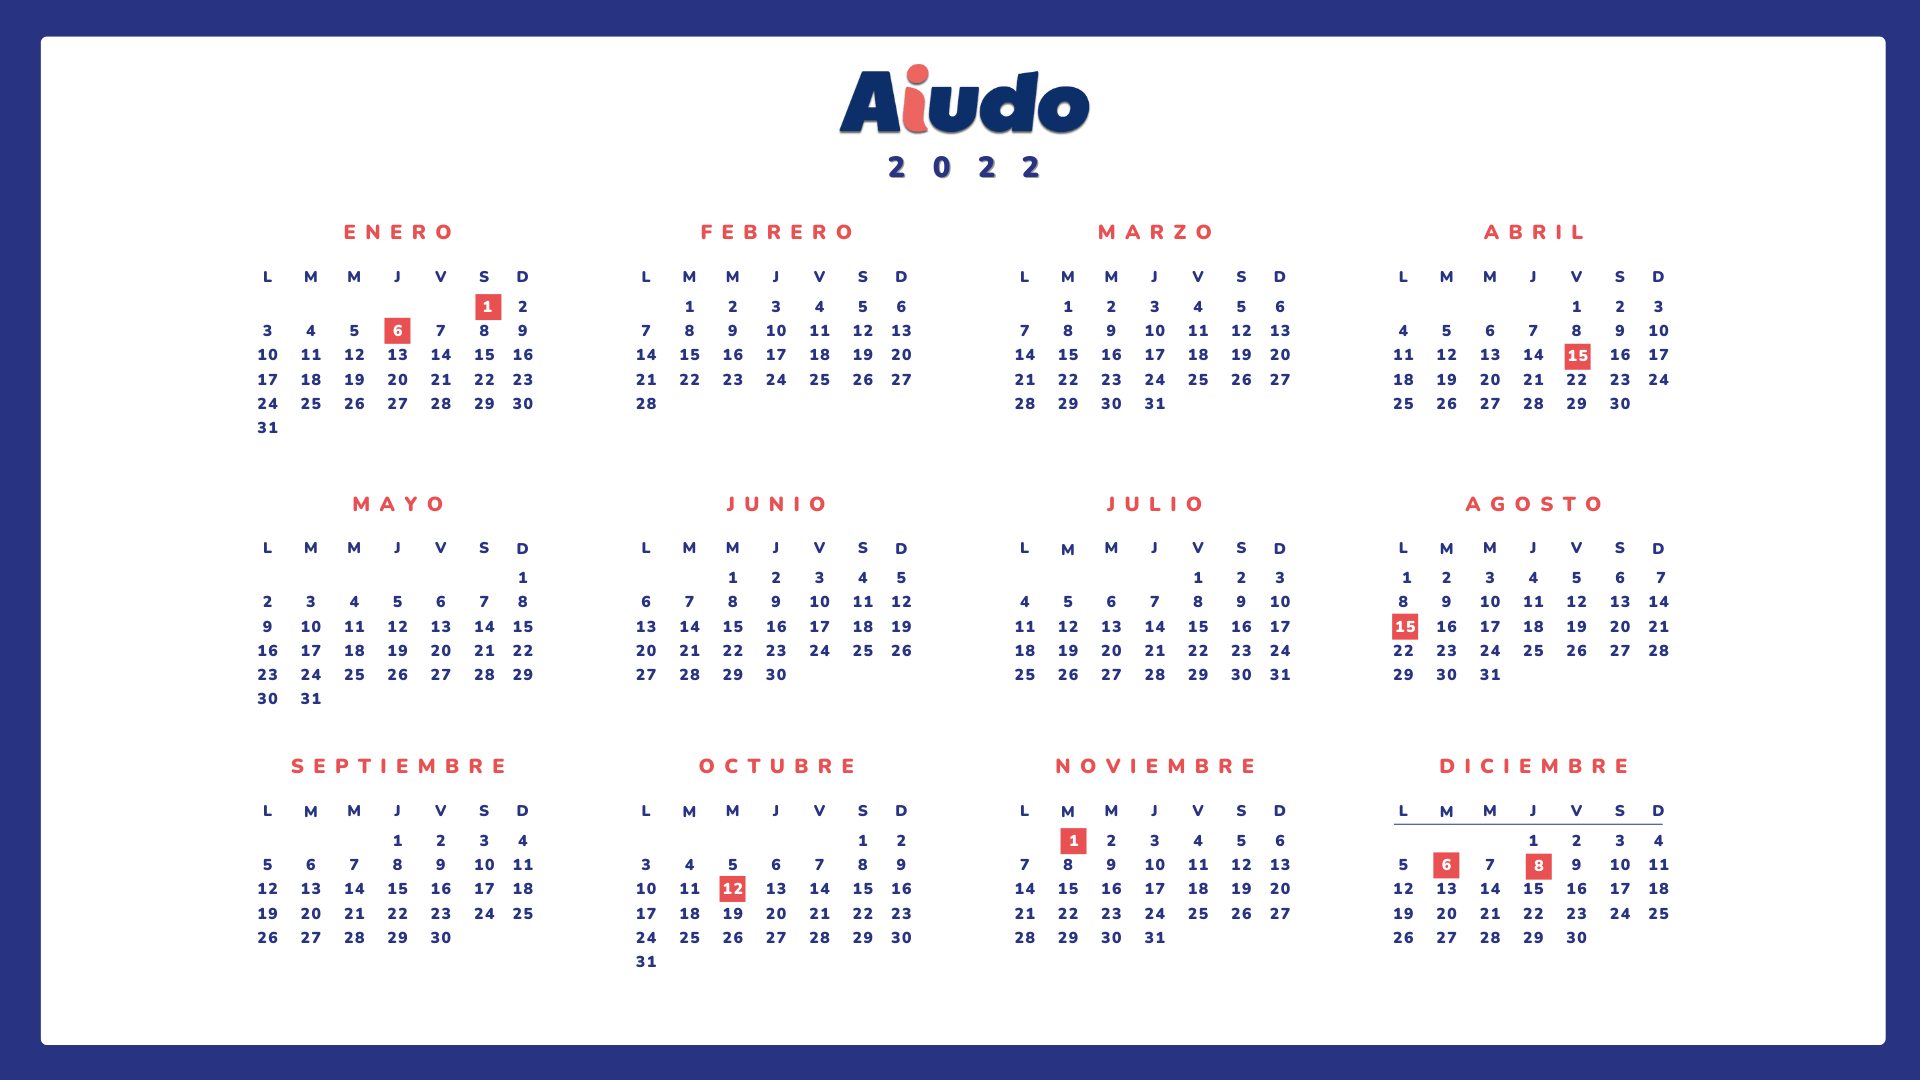 Se muestra un calendario de festivos para las cuidadoras de hogar, con las fechas festivas marcadas en rojo, en concreto, 8 días festivos en todo el 2022.